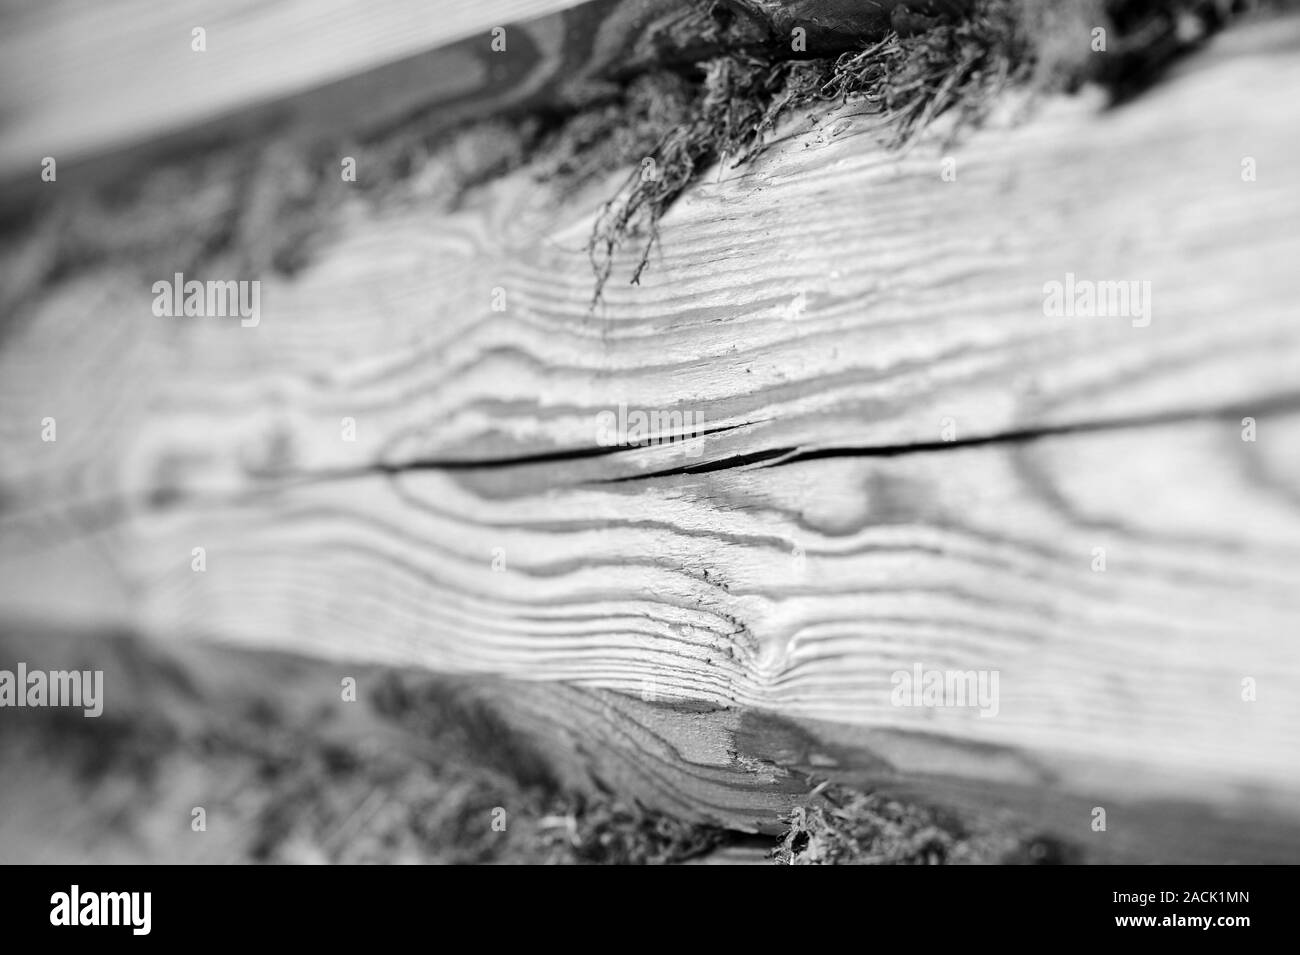 Eine hölzerne Wand von Logs und trockenem Moos Nahaufnahme. Zusammenfassung Hintergrund schwarz und weiß Stockfoto